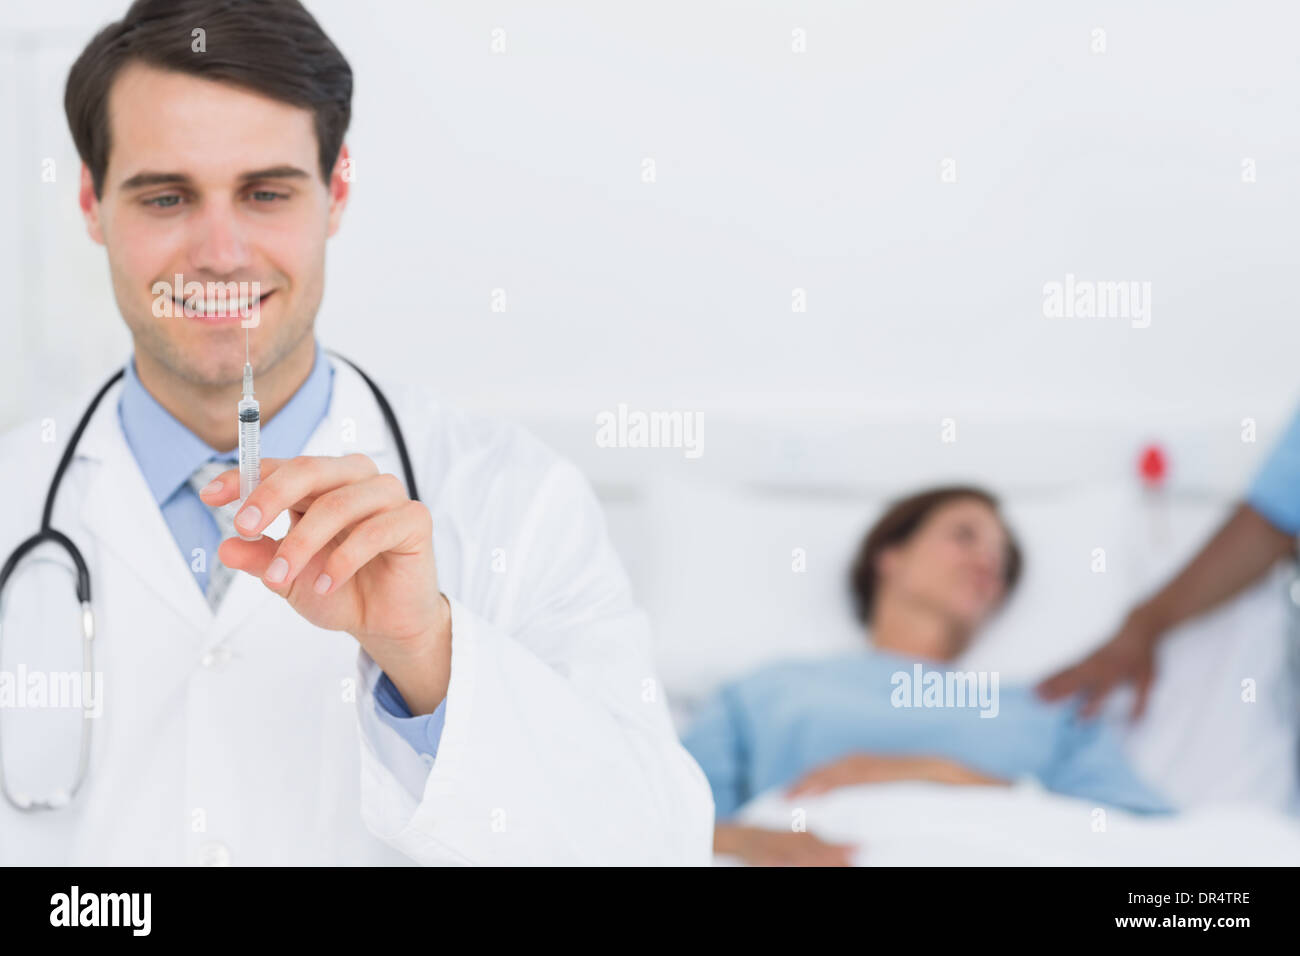 Männlichen Arzt Hält Eine Spritze Im Krankenhaus Stockfotografie Alamy